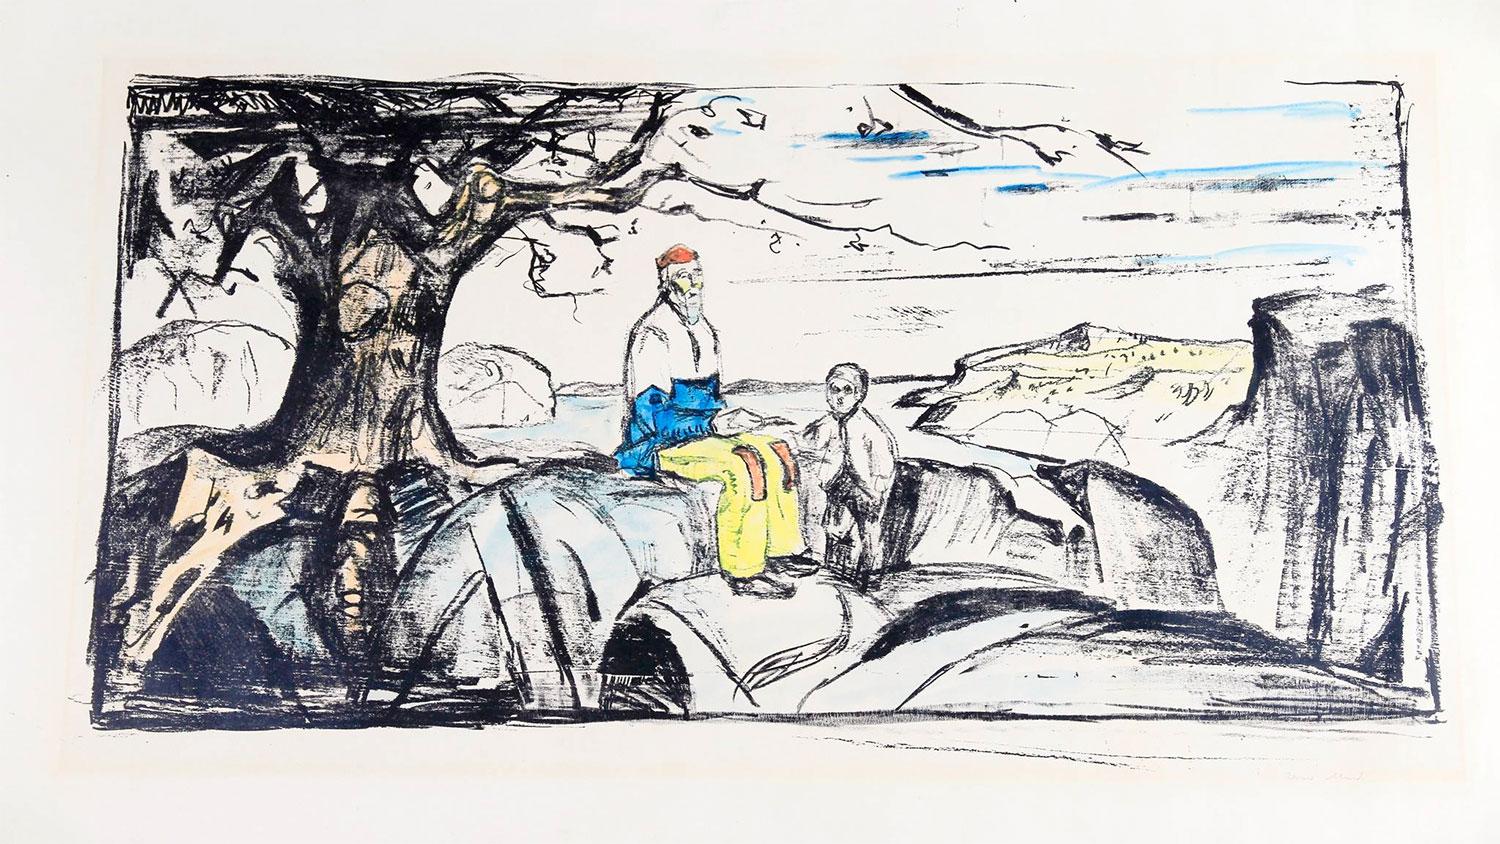 Litografin ”Historien”, av Edvard Munch, stals från ett konstgalleri i Oslo 2009.